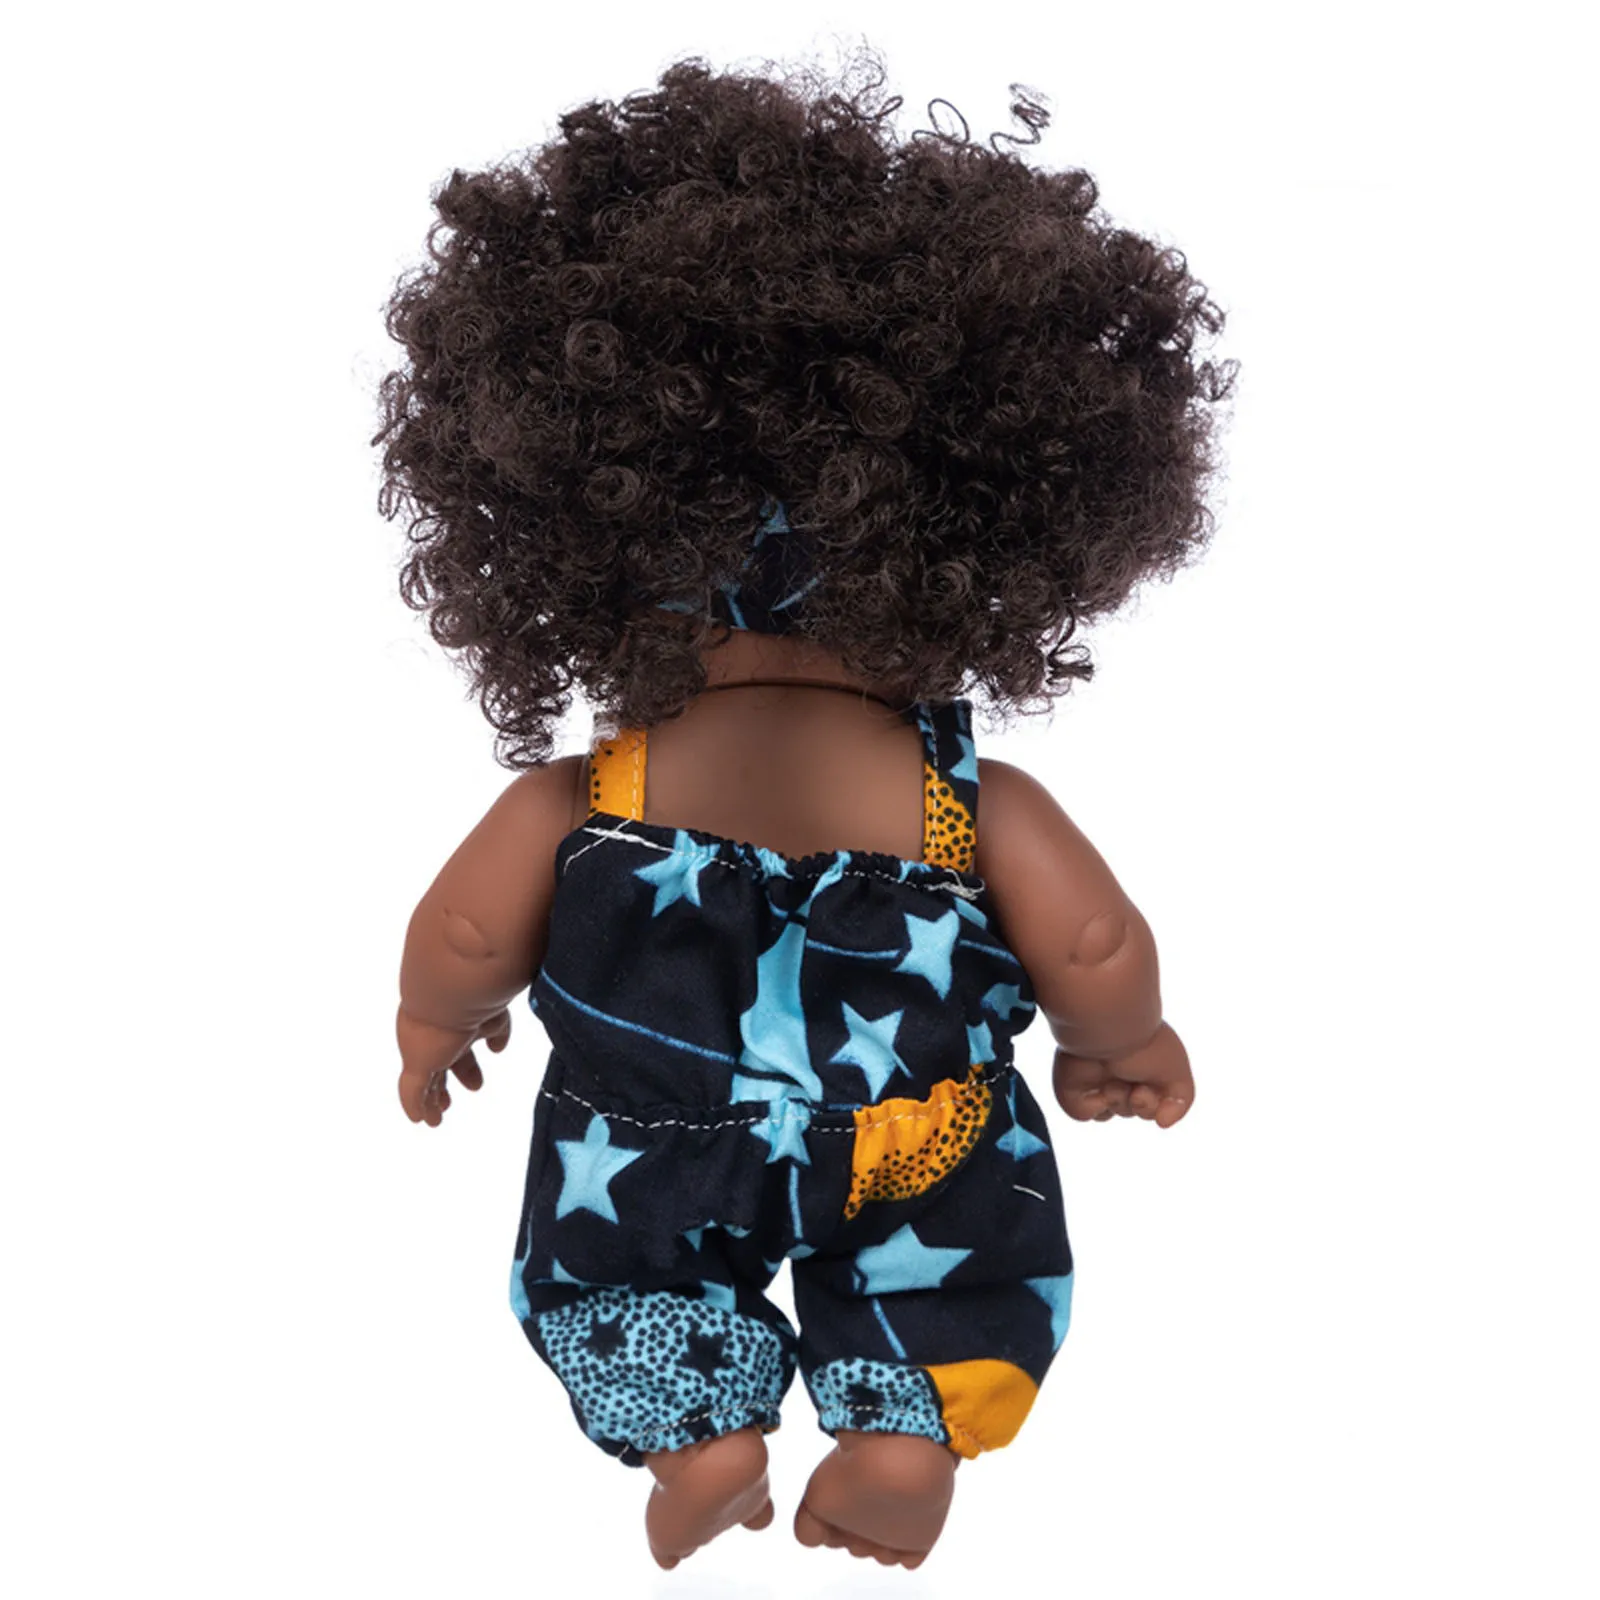 Black african black dolls lifelike explosion head wear a headscarf baby cute curly black inch